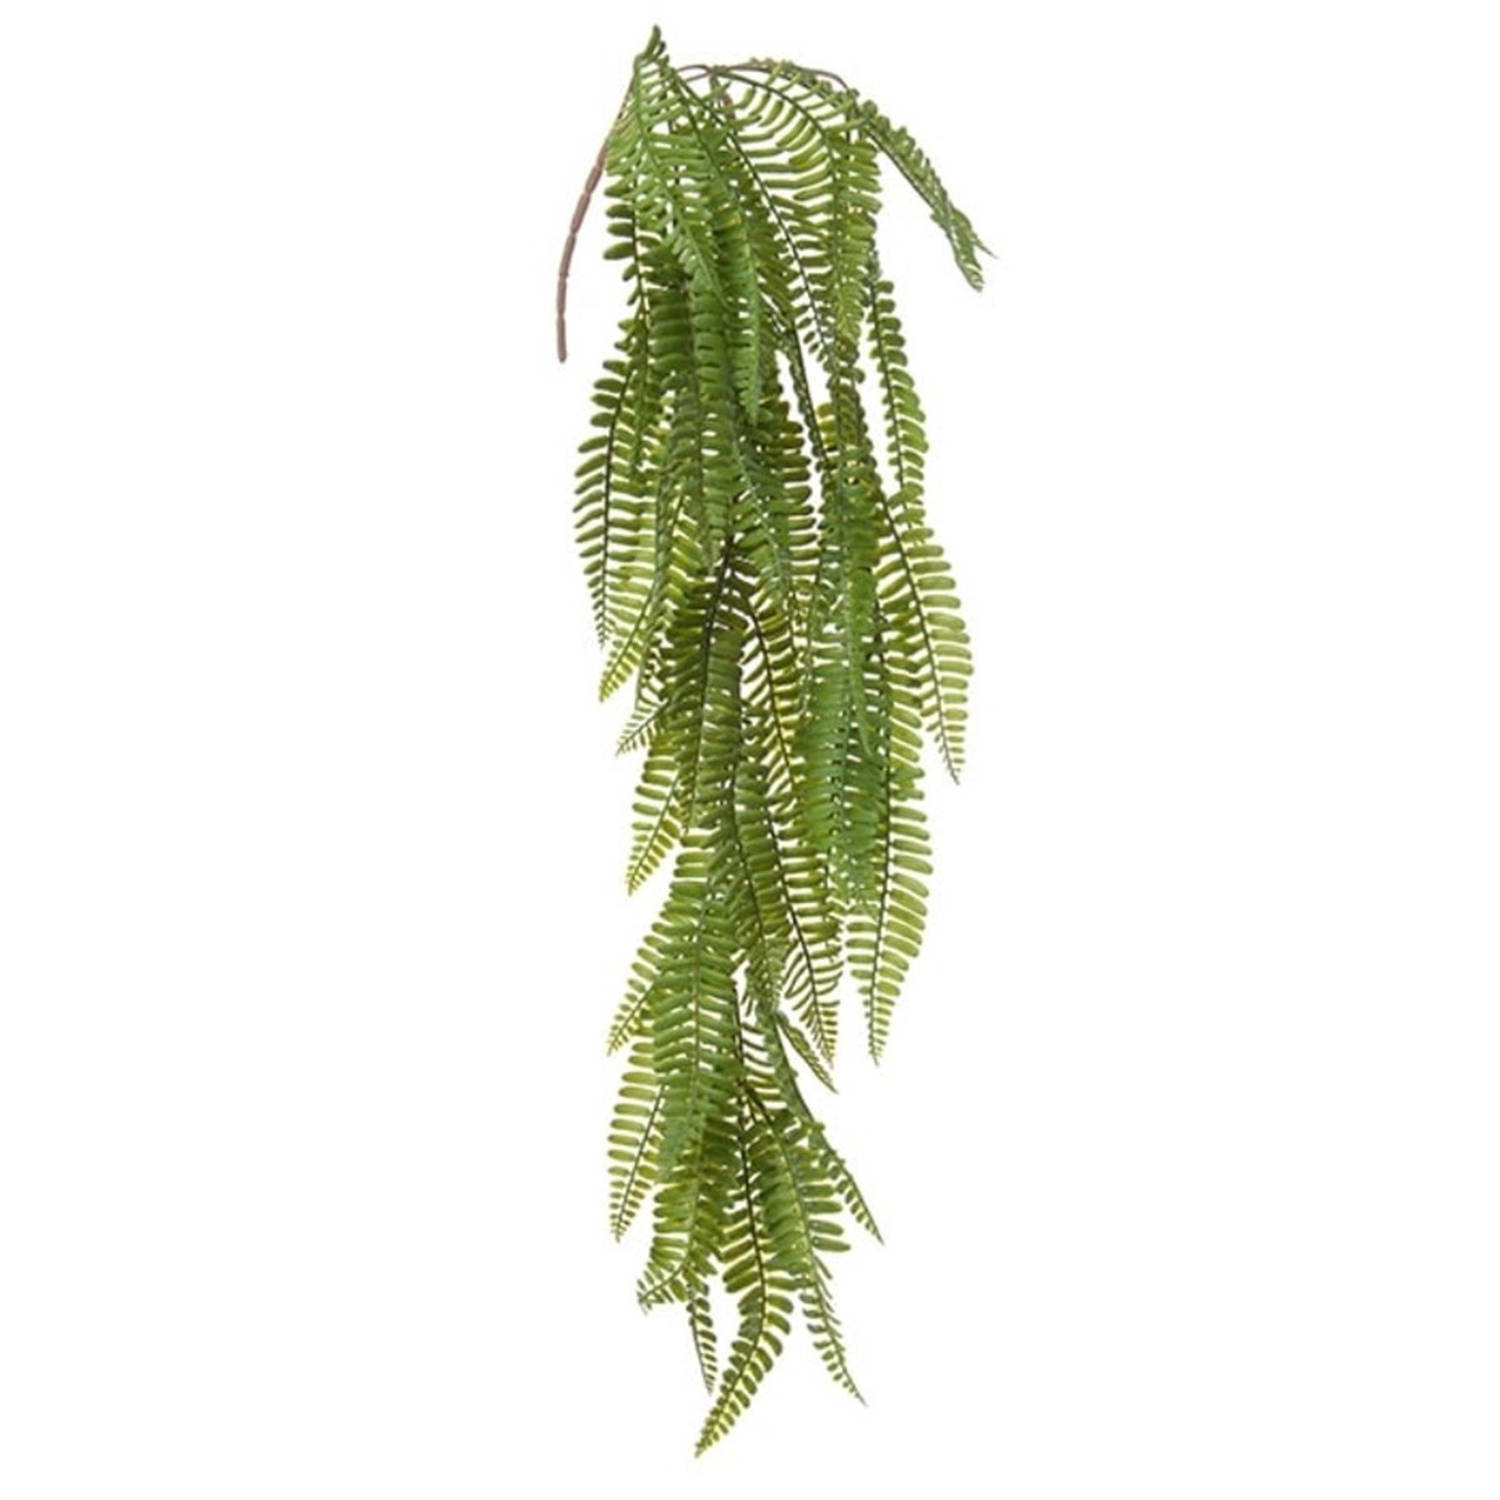 Louis Maes kunstplanten - Varen - groen - hangende takken bos van 70 cm - hangplant